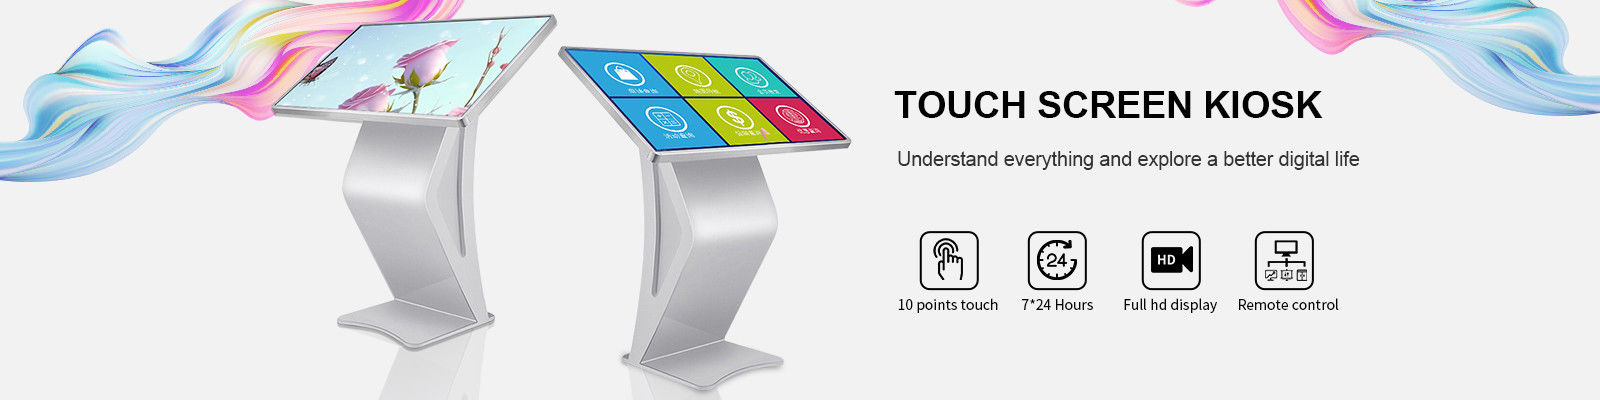 Chiosco del touch screen